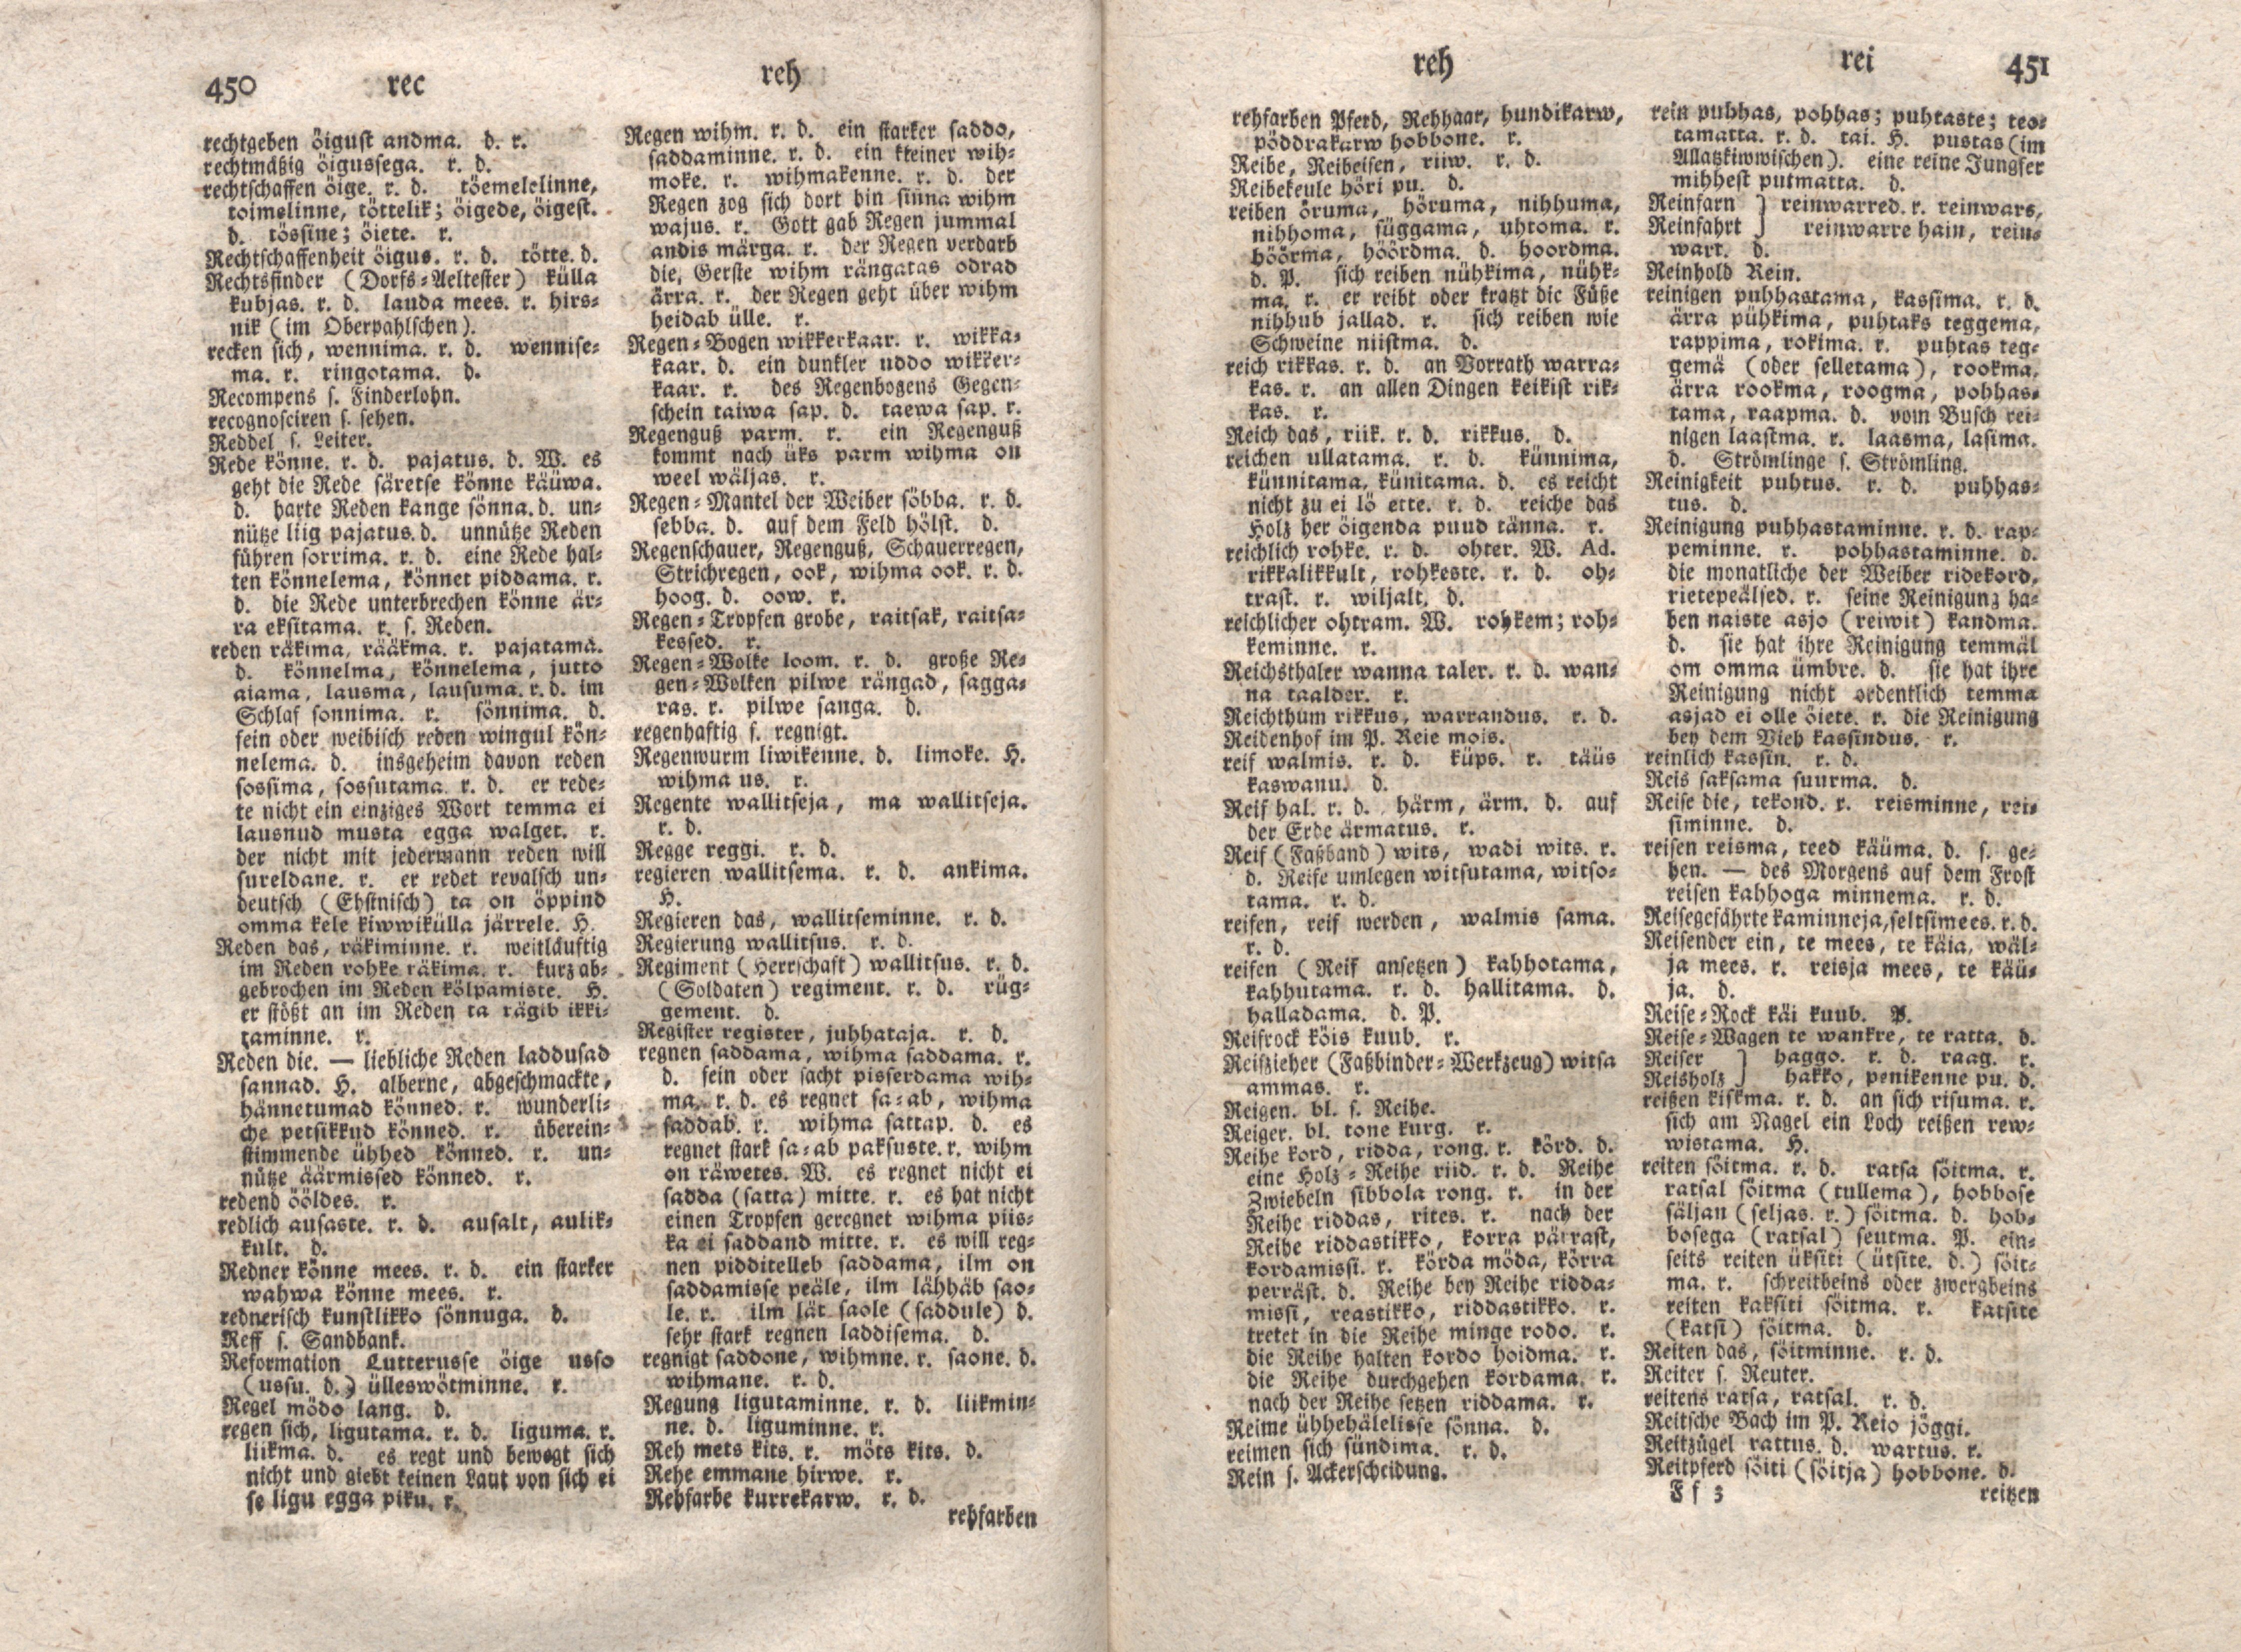 Ehstnische Sprachlehre für beide Hauptdialekte (1780) | 236. (450-451) Main body of text